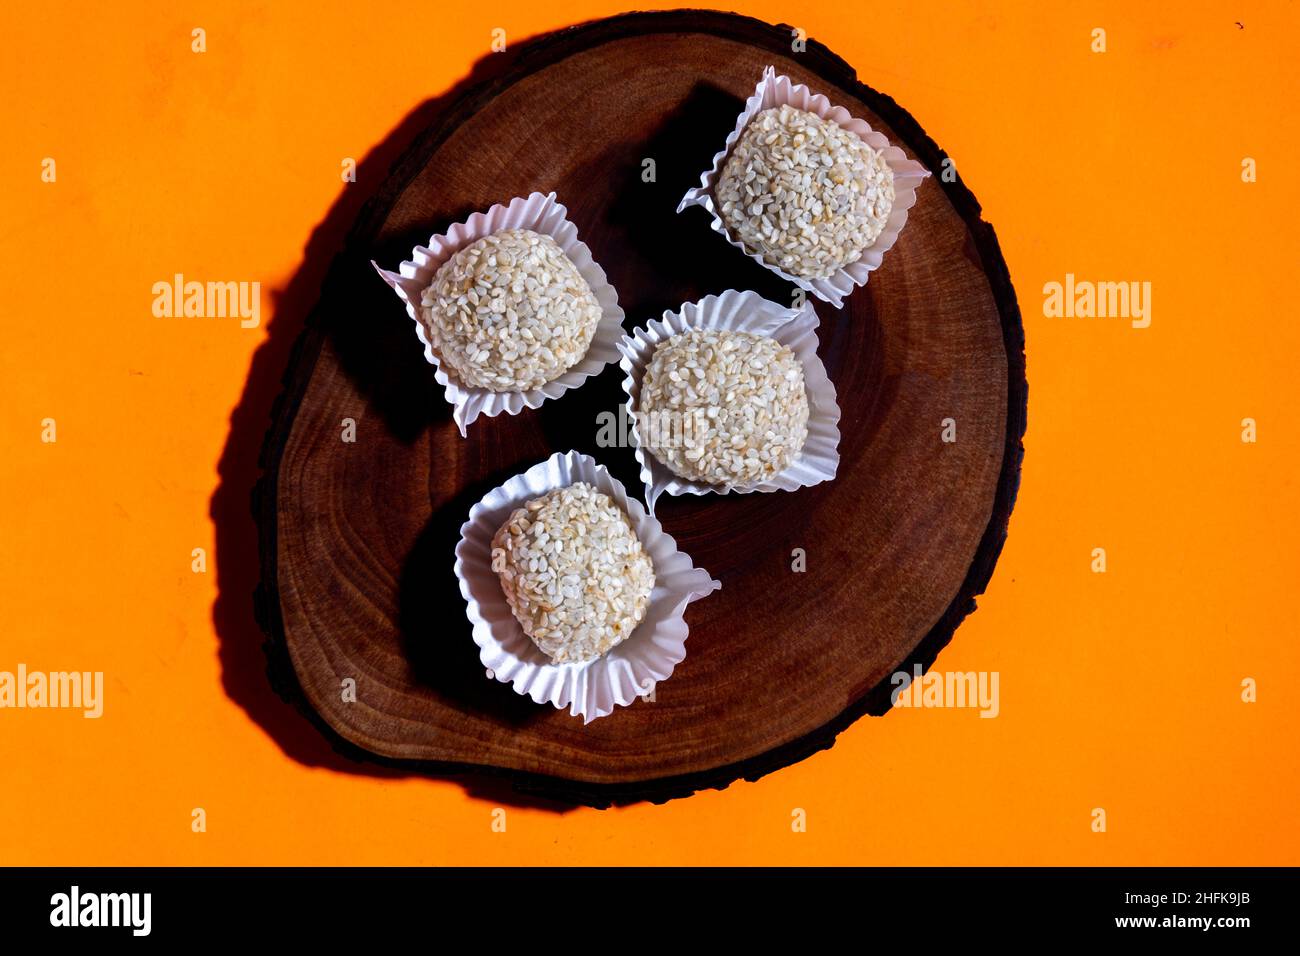 Indonesian mochi cake, adaptation of Japanese mochi. Stock Photo